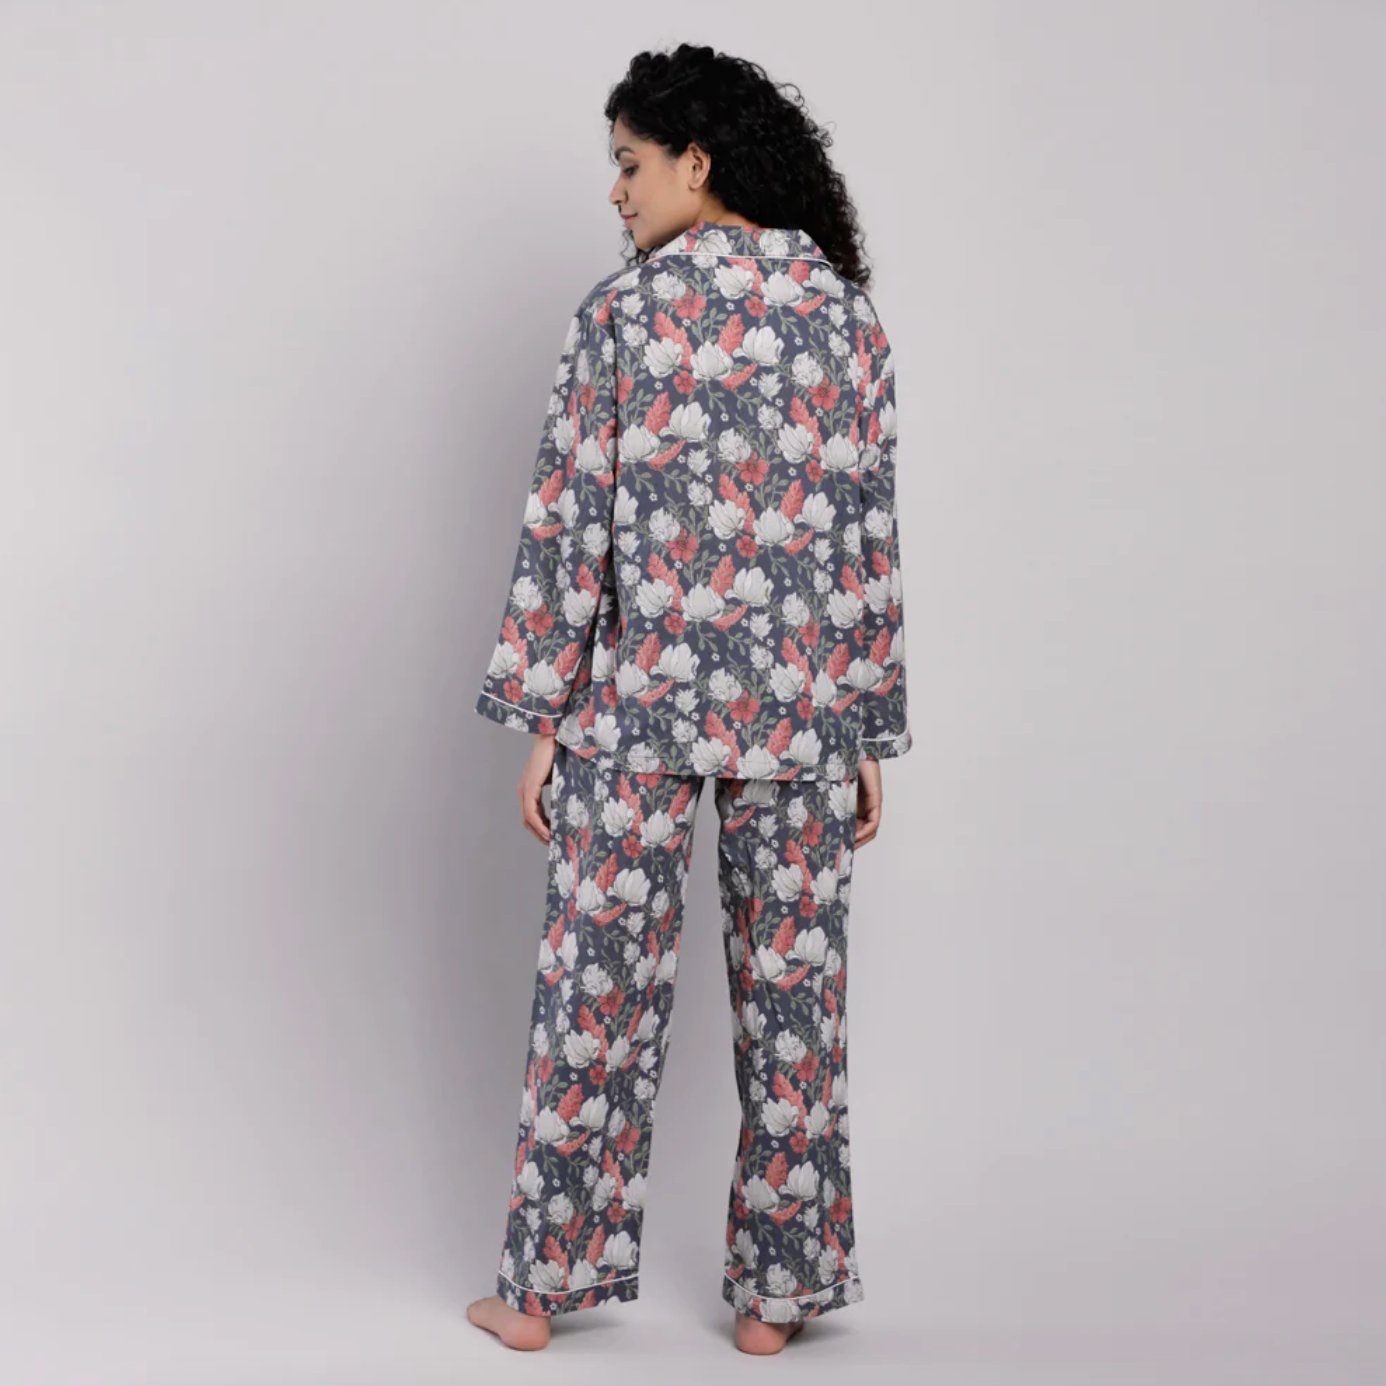 Madison cotton pajamas